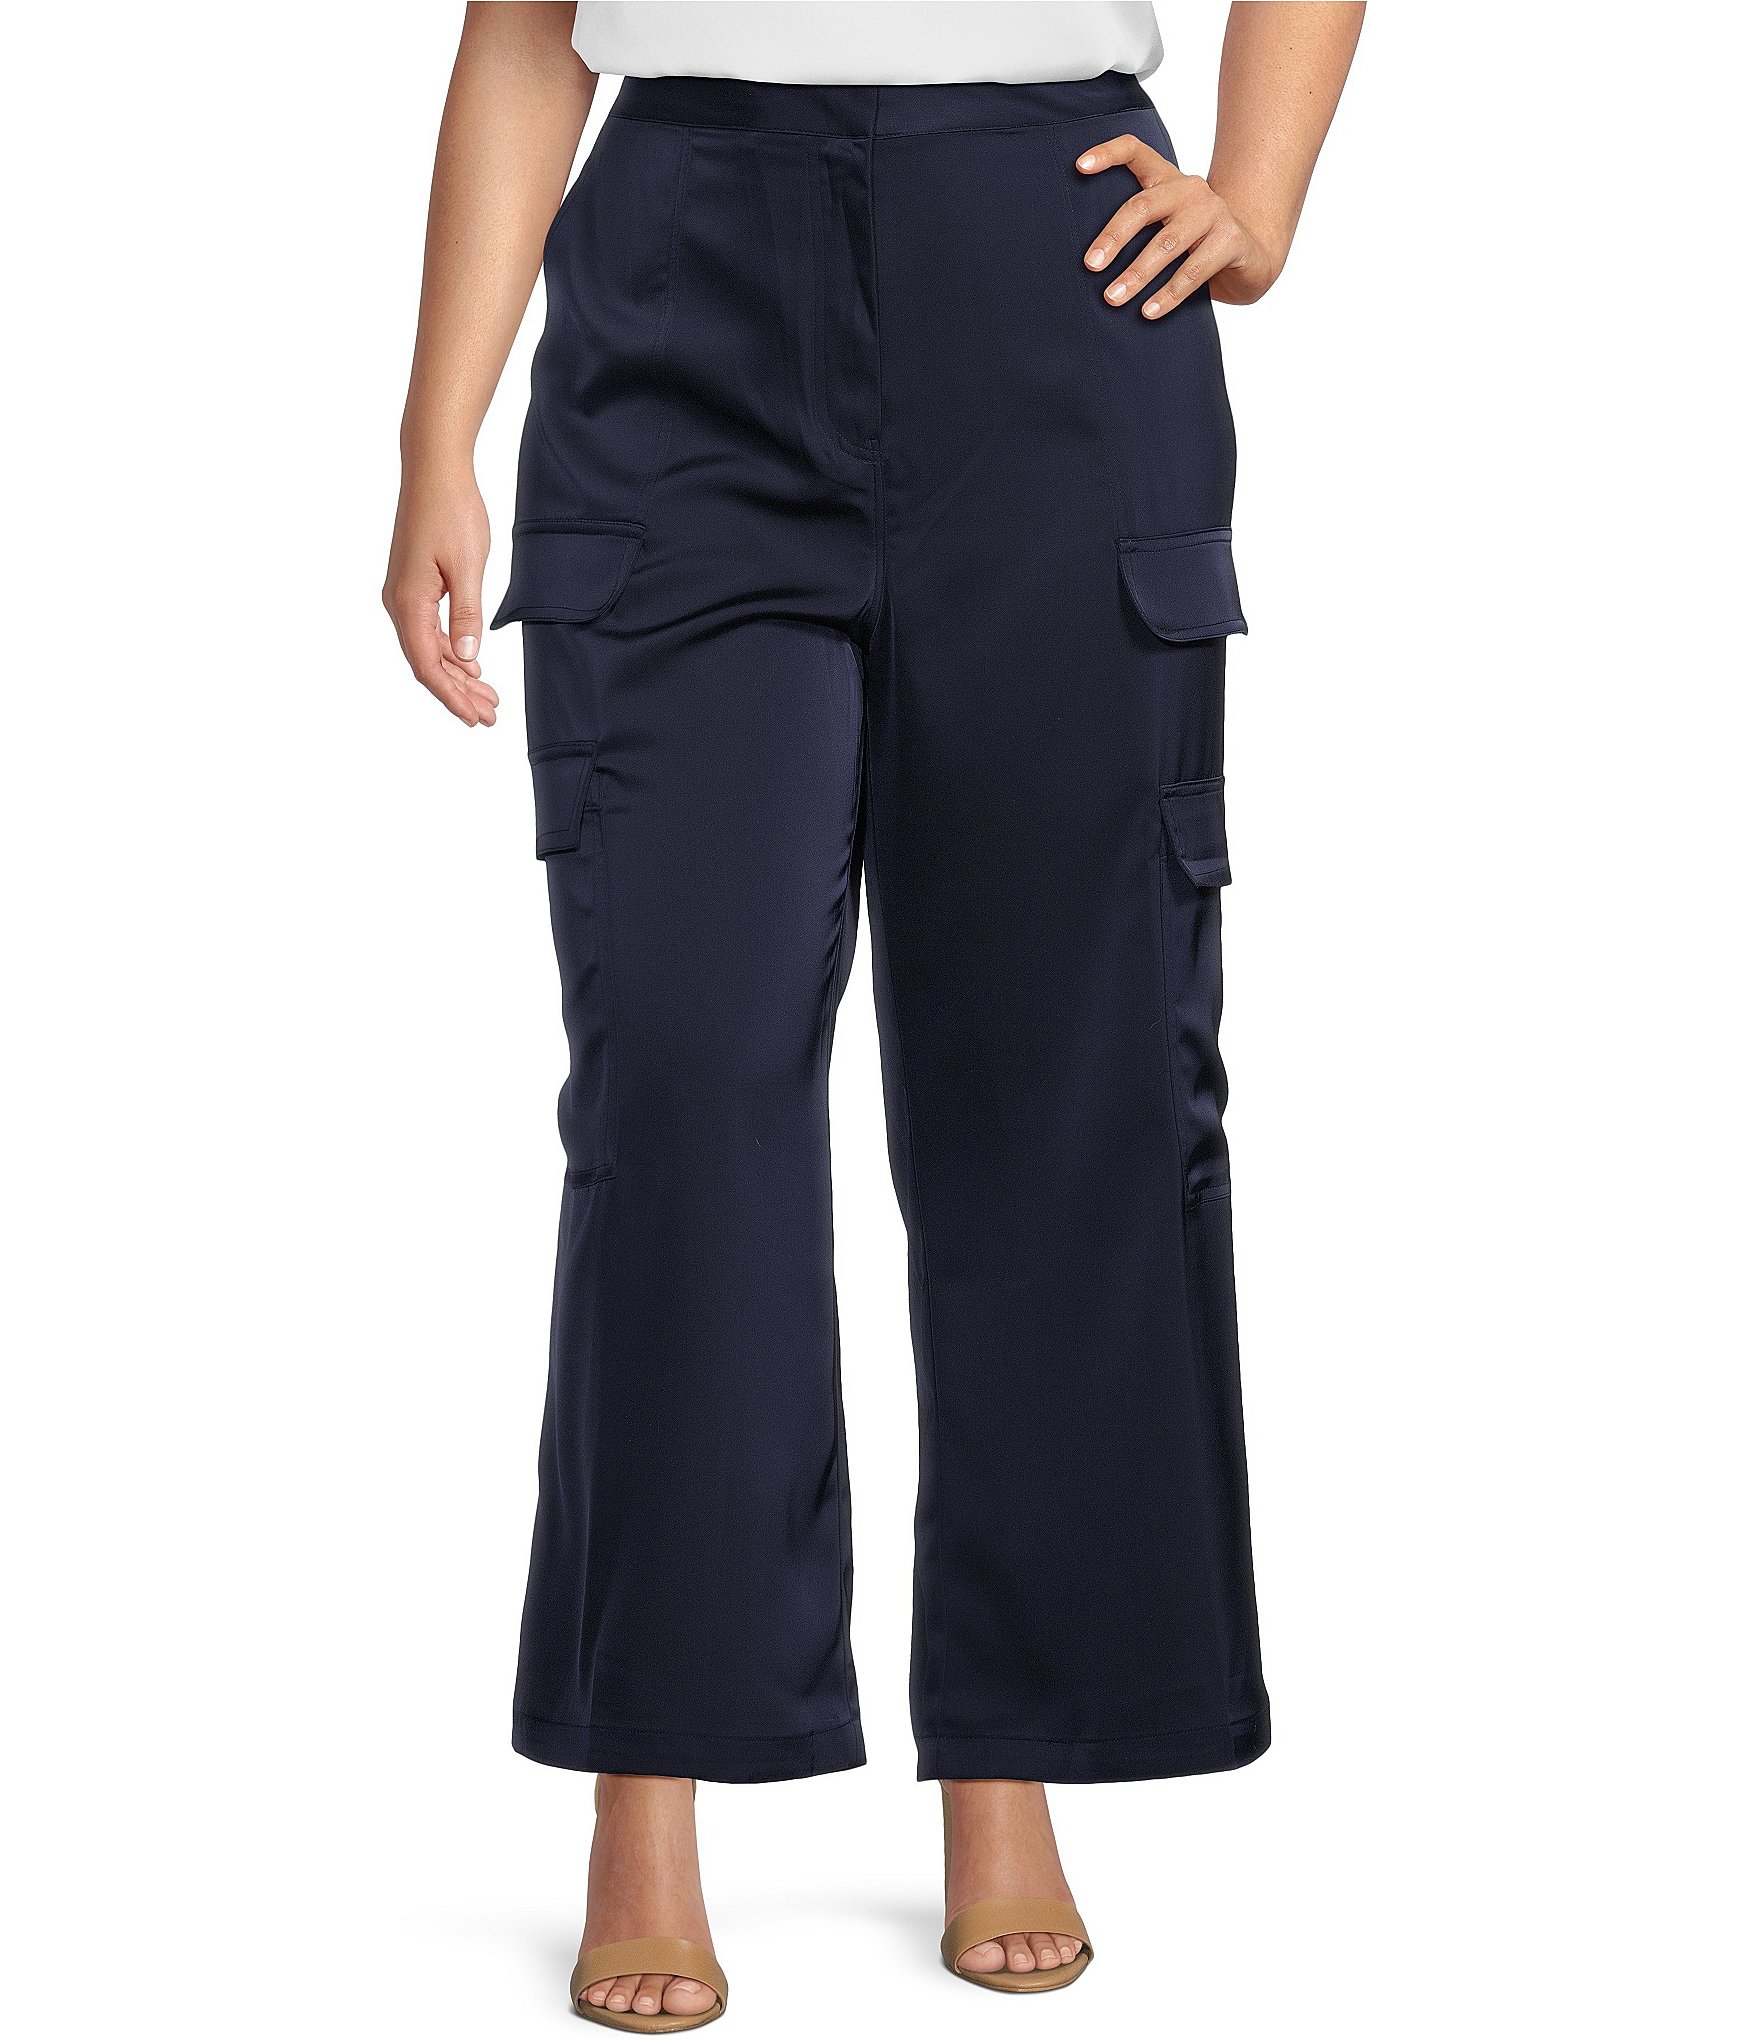 fvwitlyh Pants for Women Falls Creek Pants Gradient Plus Size Regular Women  Waist Mid Pants Long Denim Jeans Slim Plus Size Pants New Cargo Pants